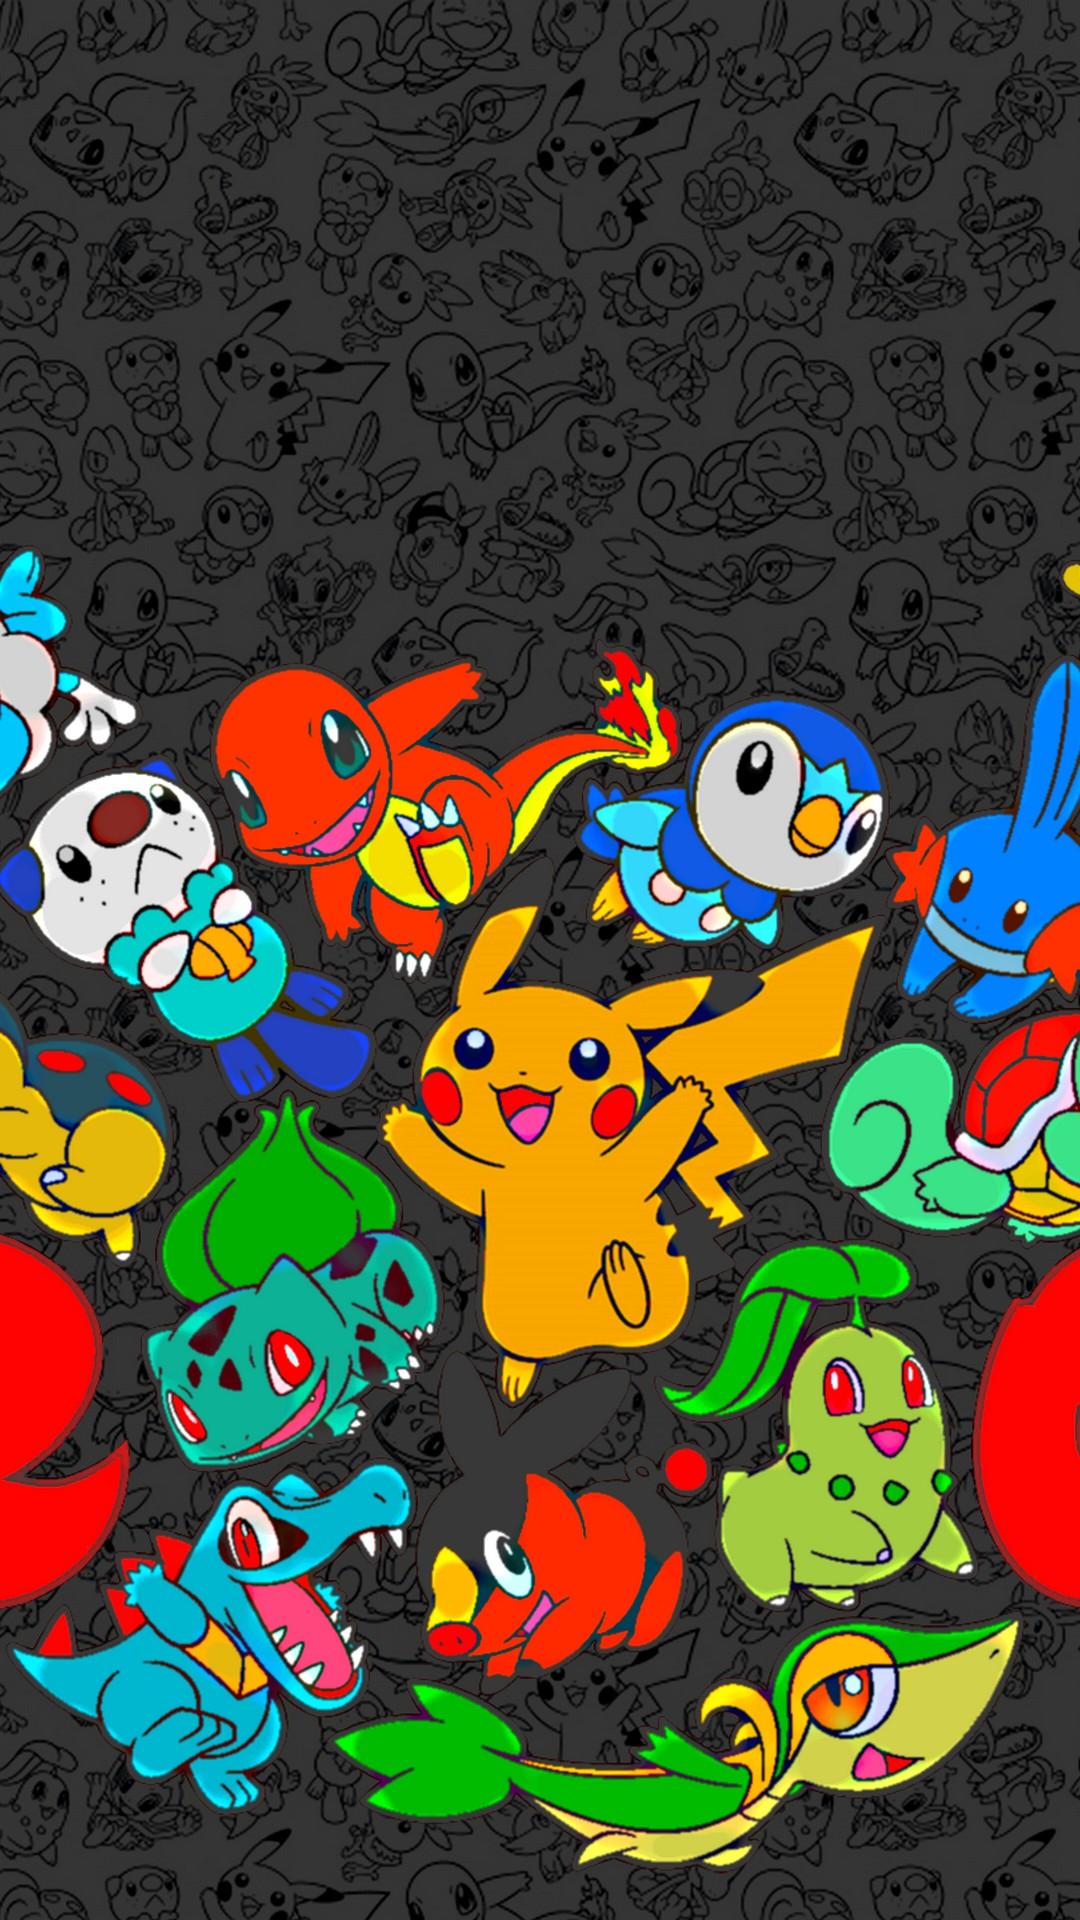 Papel de Parede e Wallpaper do Pokemon